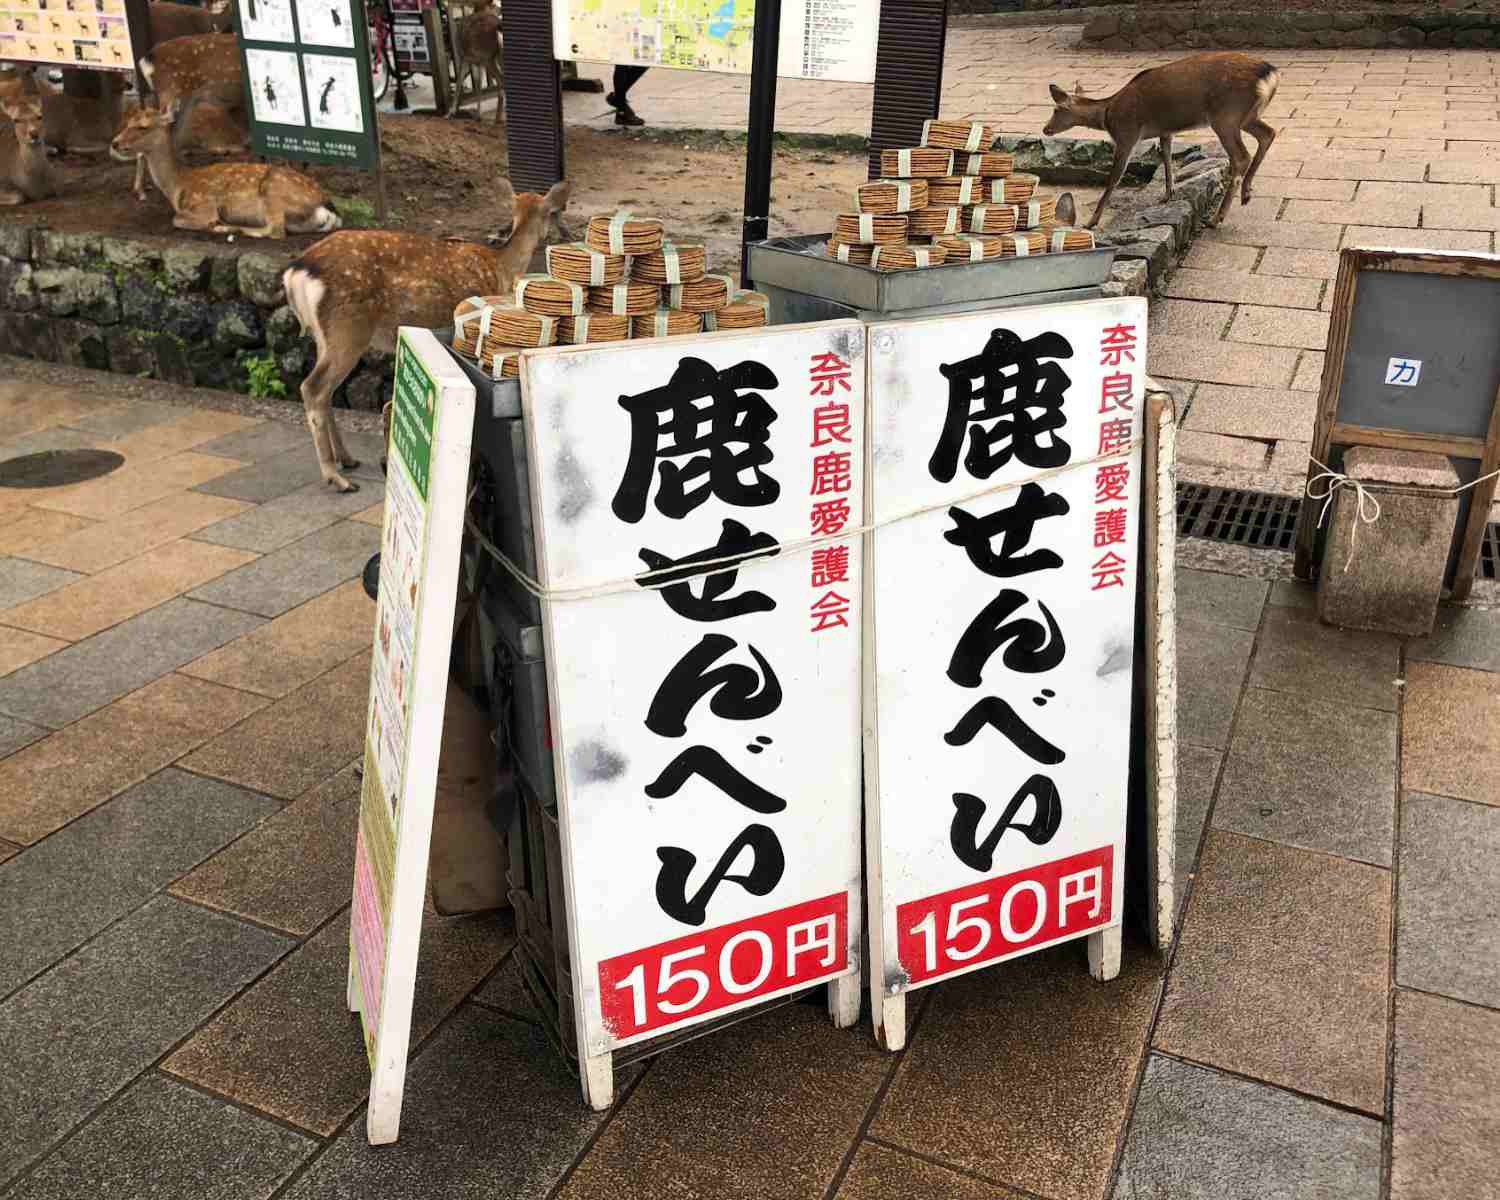 Deer biscuits in Nara Japan